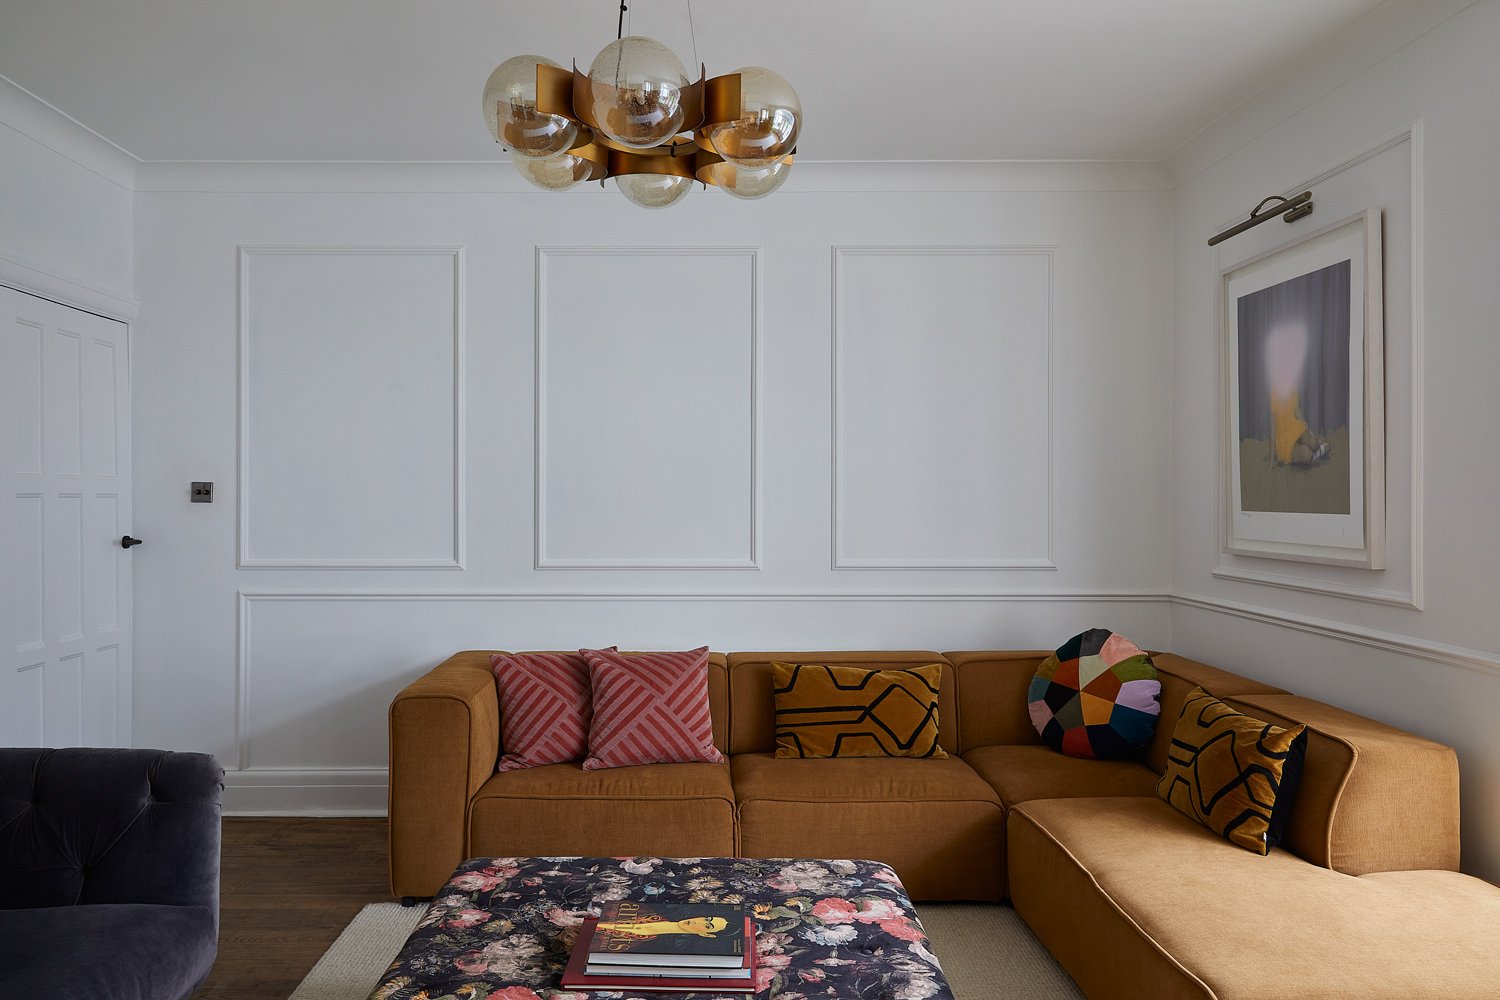 honey-corner-sofa-under-metallic-ceiling-light.jpg